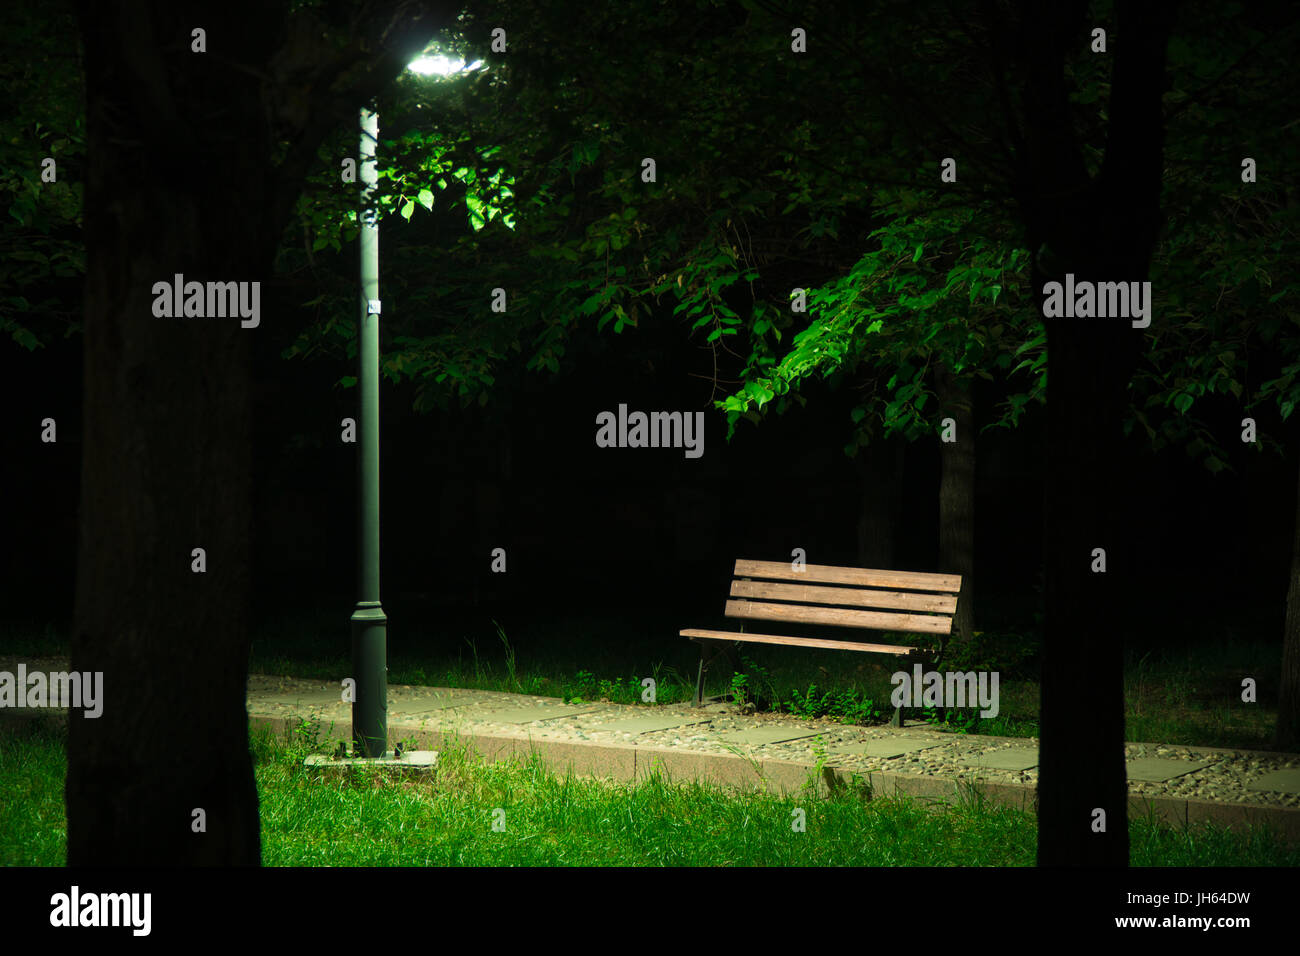 Das Licht einer Laterne shinning auf einer Holzbank und den umliegenden Rasen mit zwei Bäumen als Silhouetten in der Nacht. Stockfoto